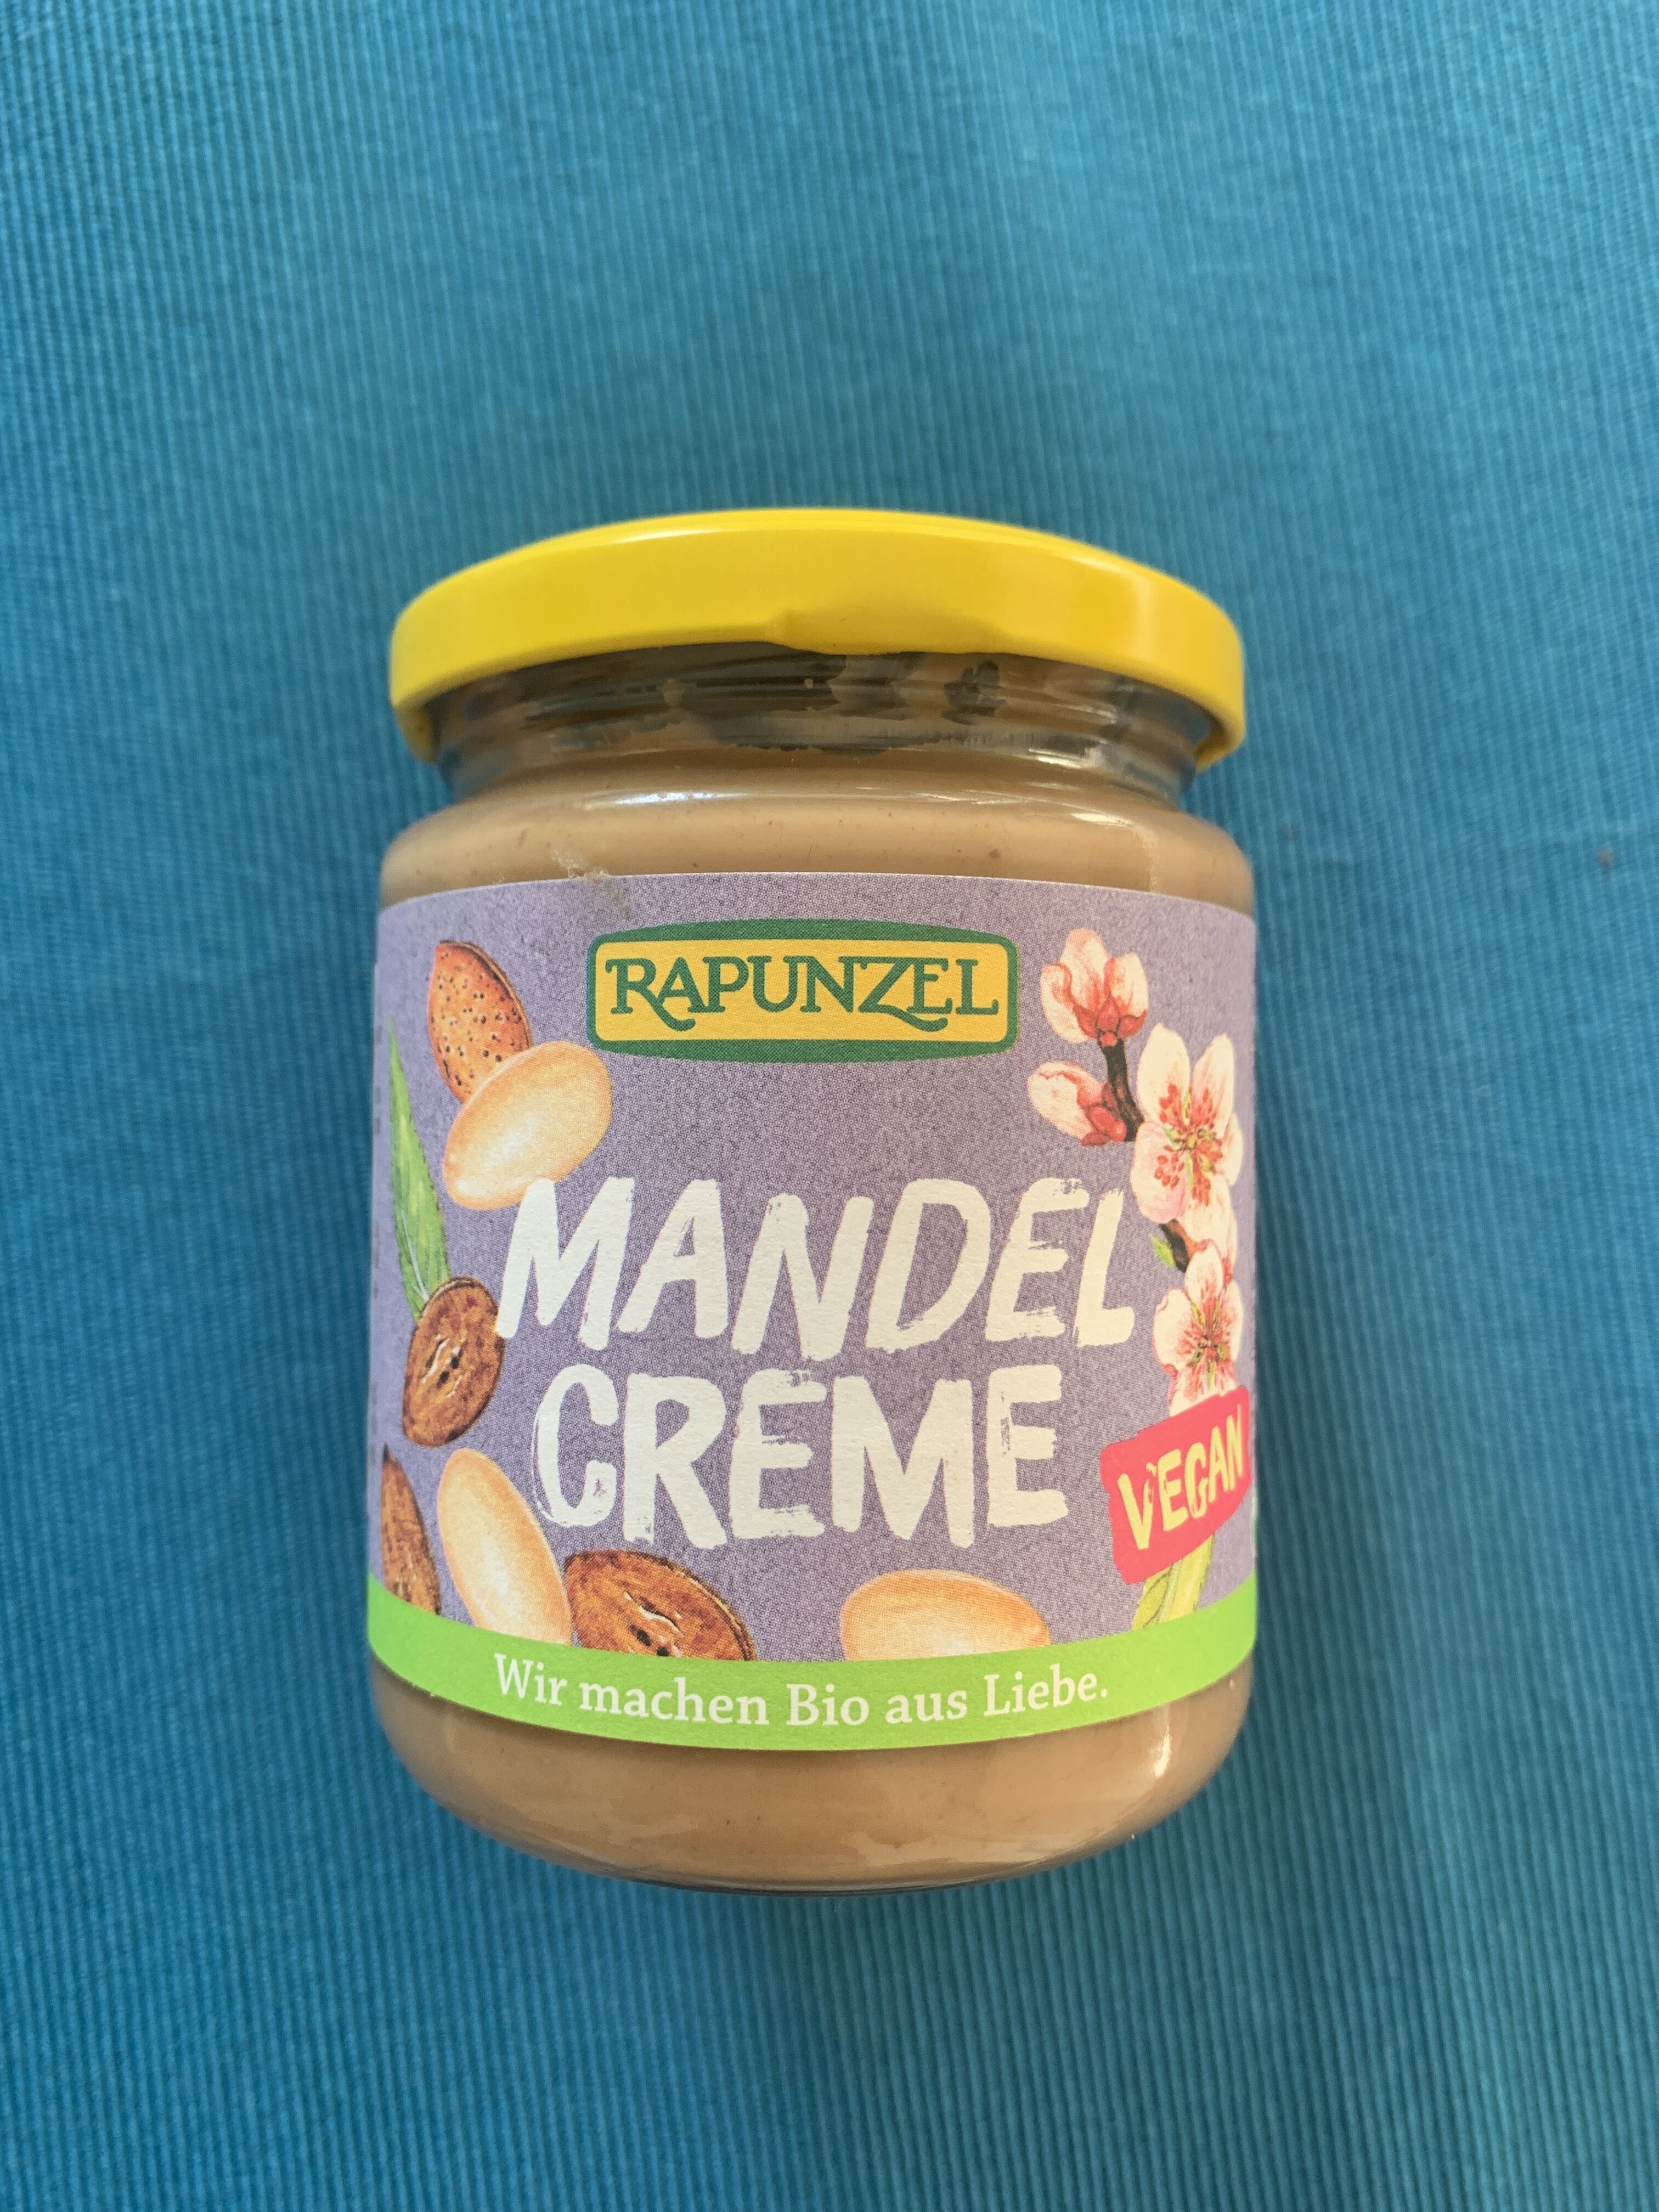 Mandel Creme - Product - fr